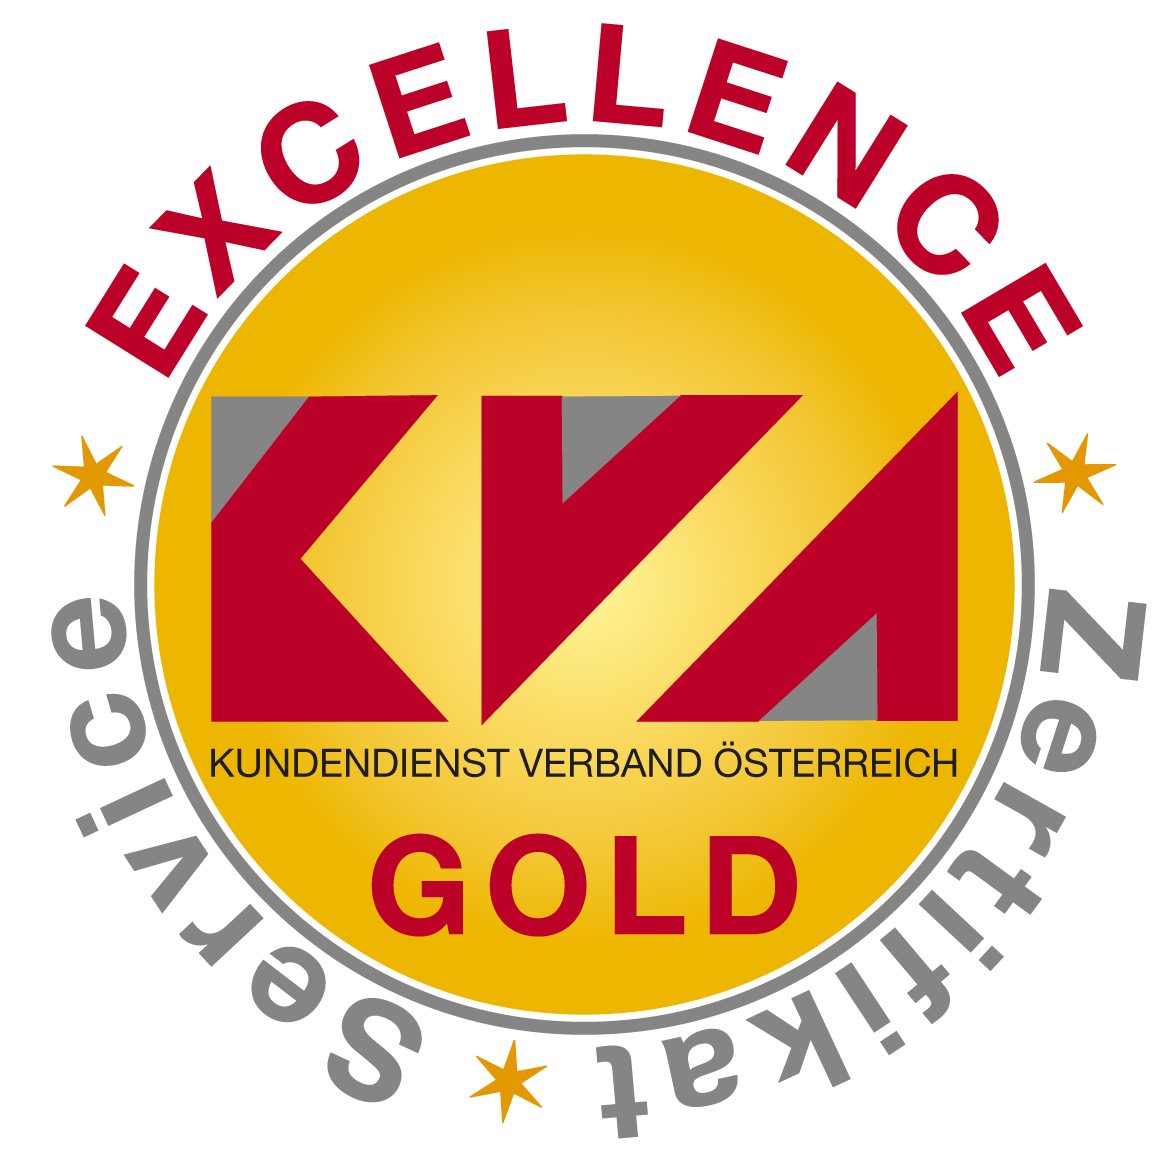 Service-Excellence-Zertifikat in Gold vom Kundendienstverband Österreich